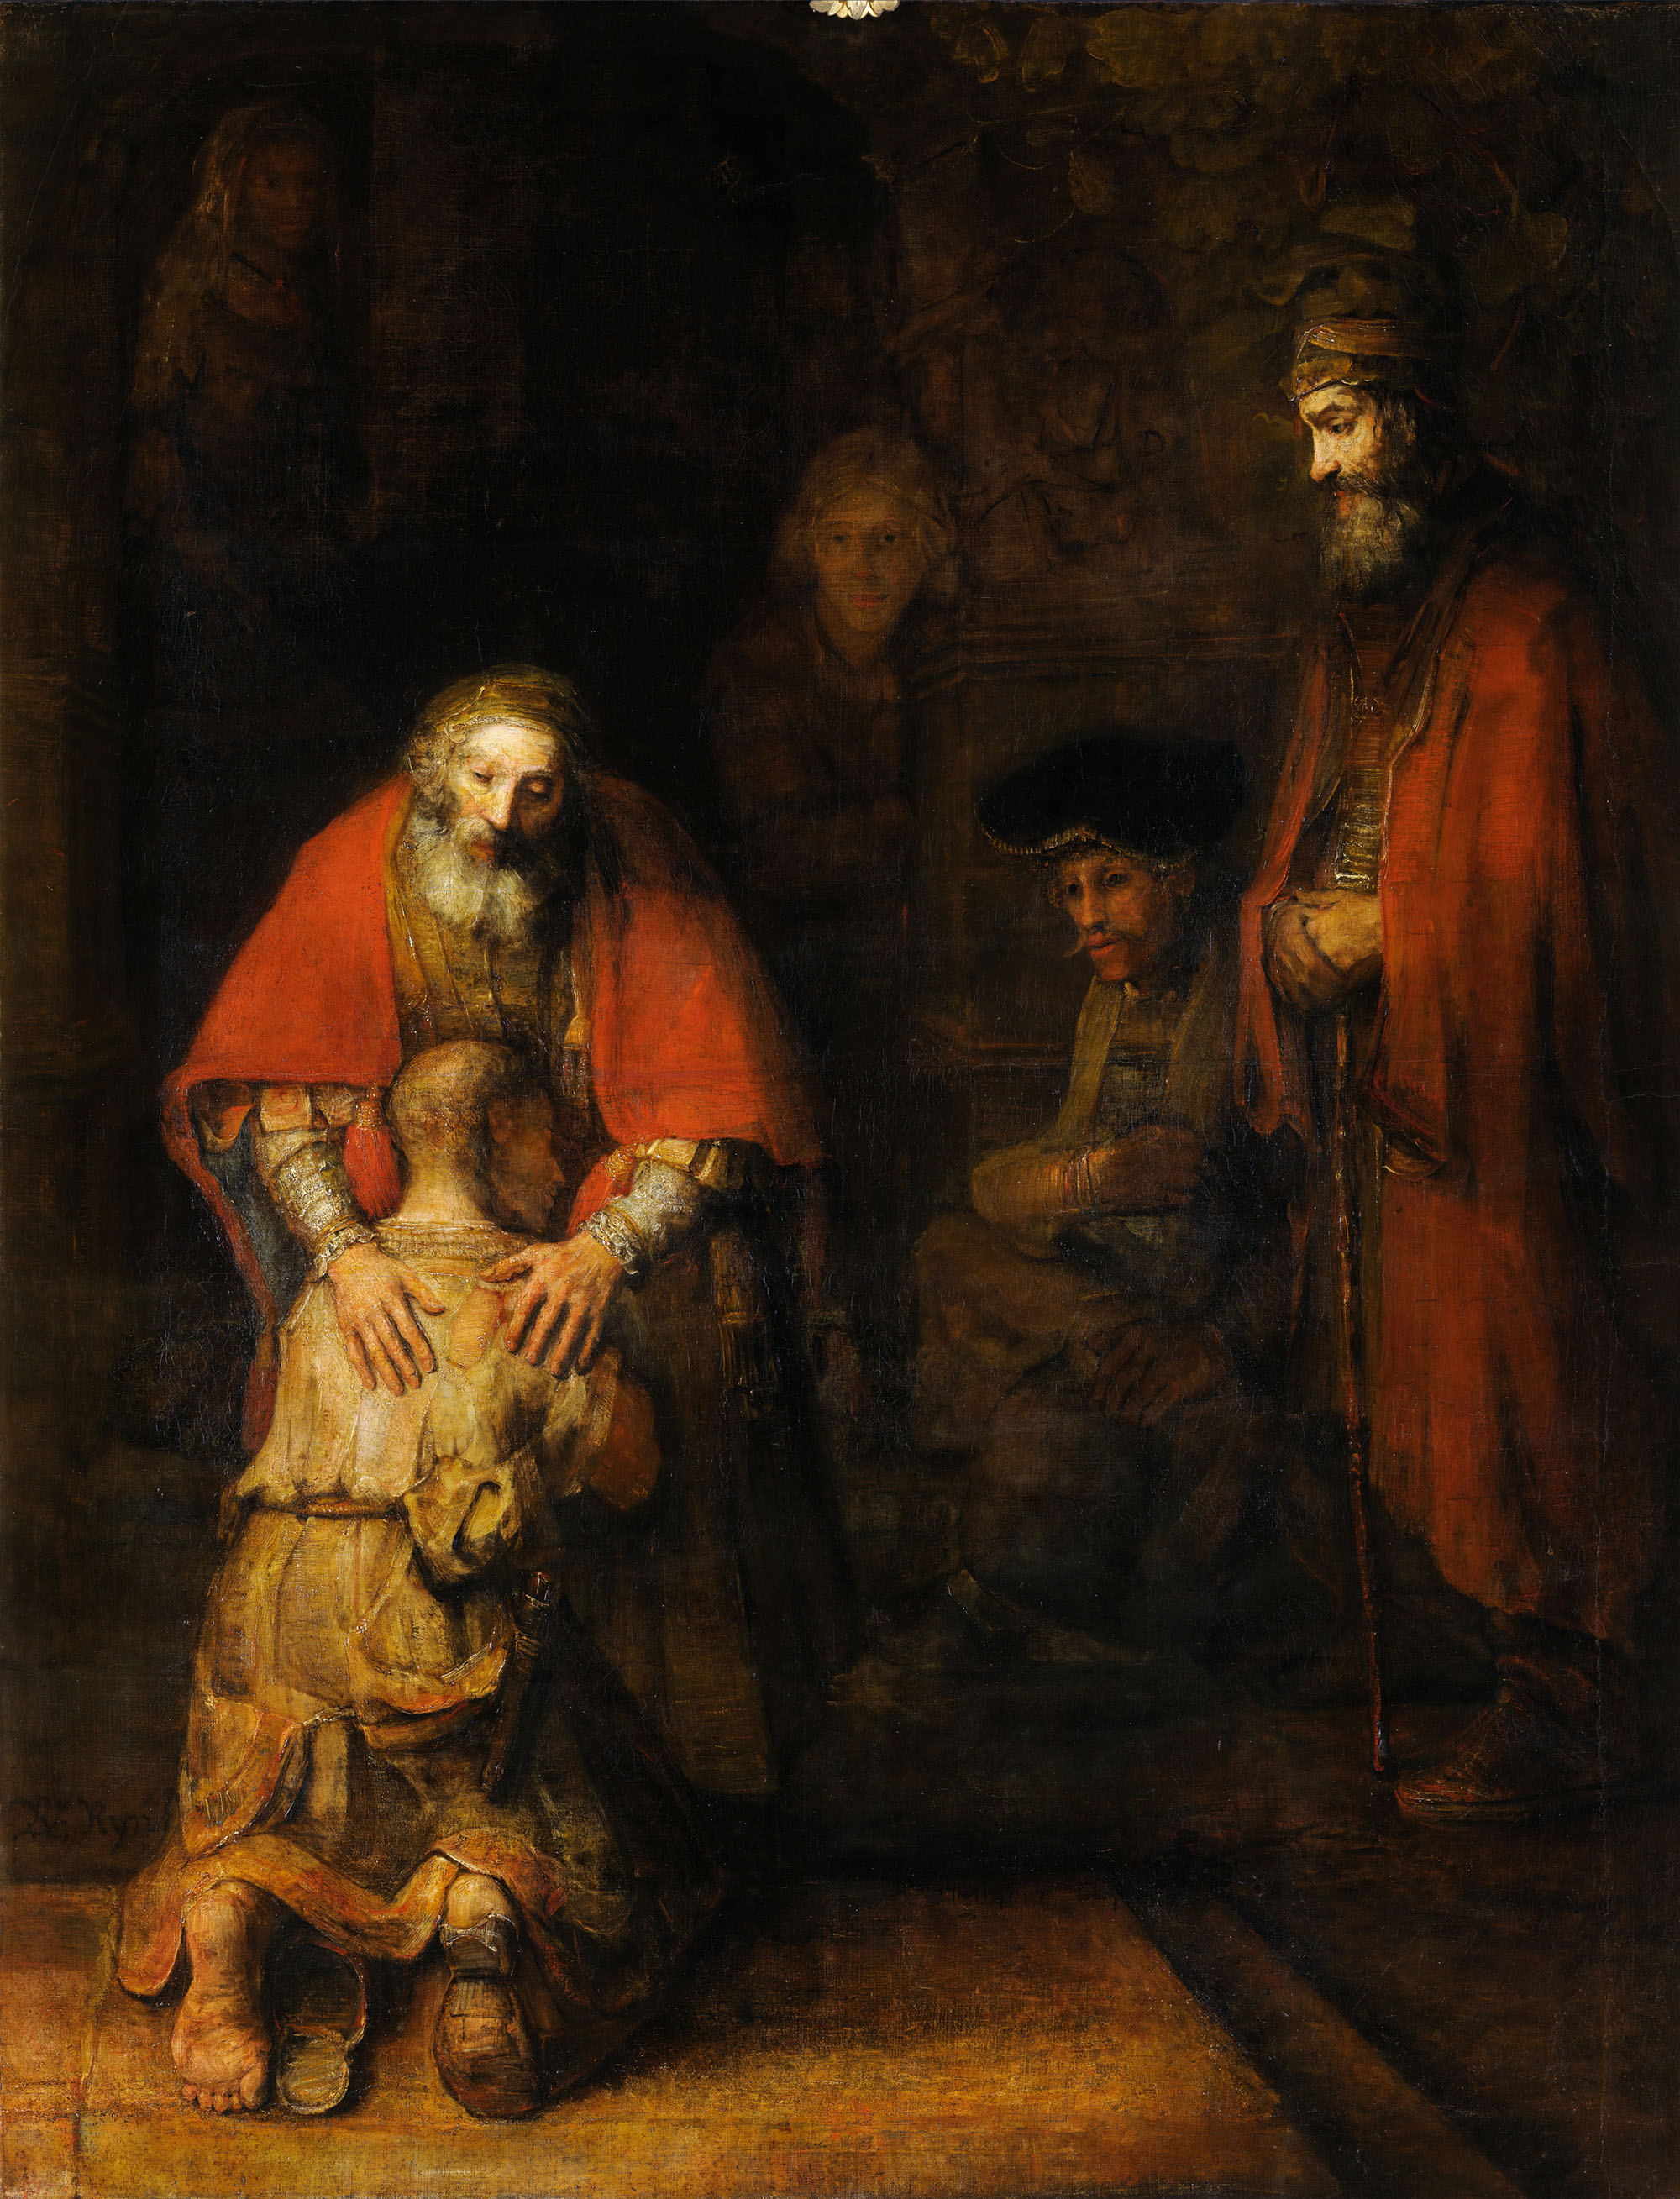 Рембрандт Харменс ван Рейн. "Возвращение блудного сына". 1668.